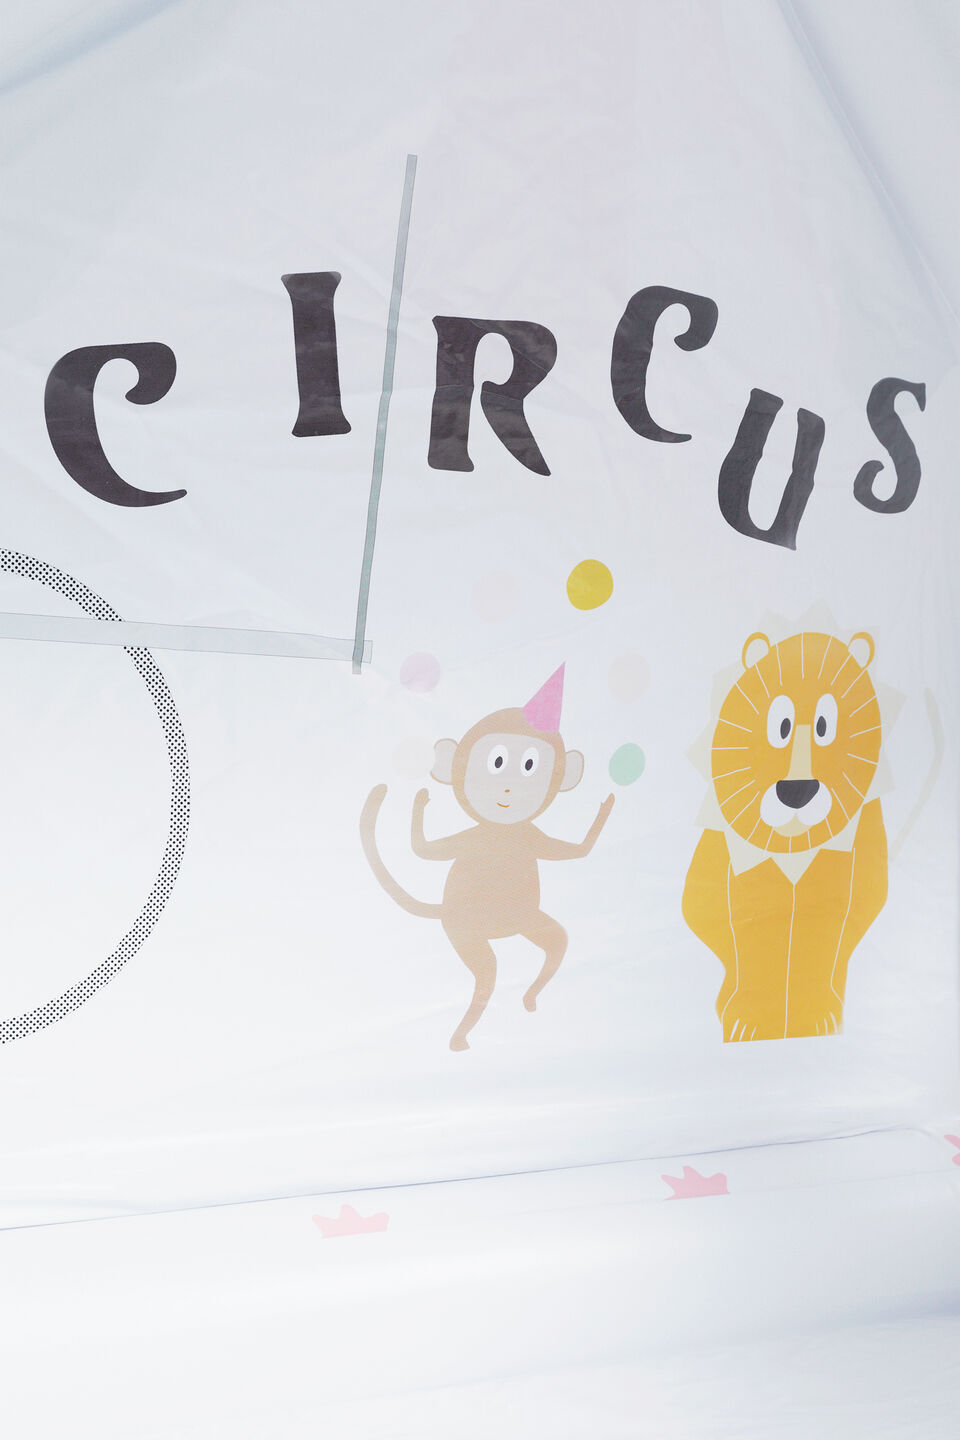 Circus Tent Cubby  Multi